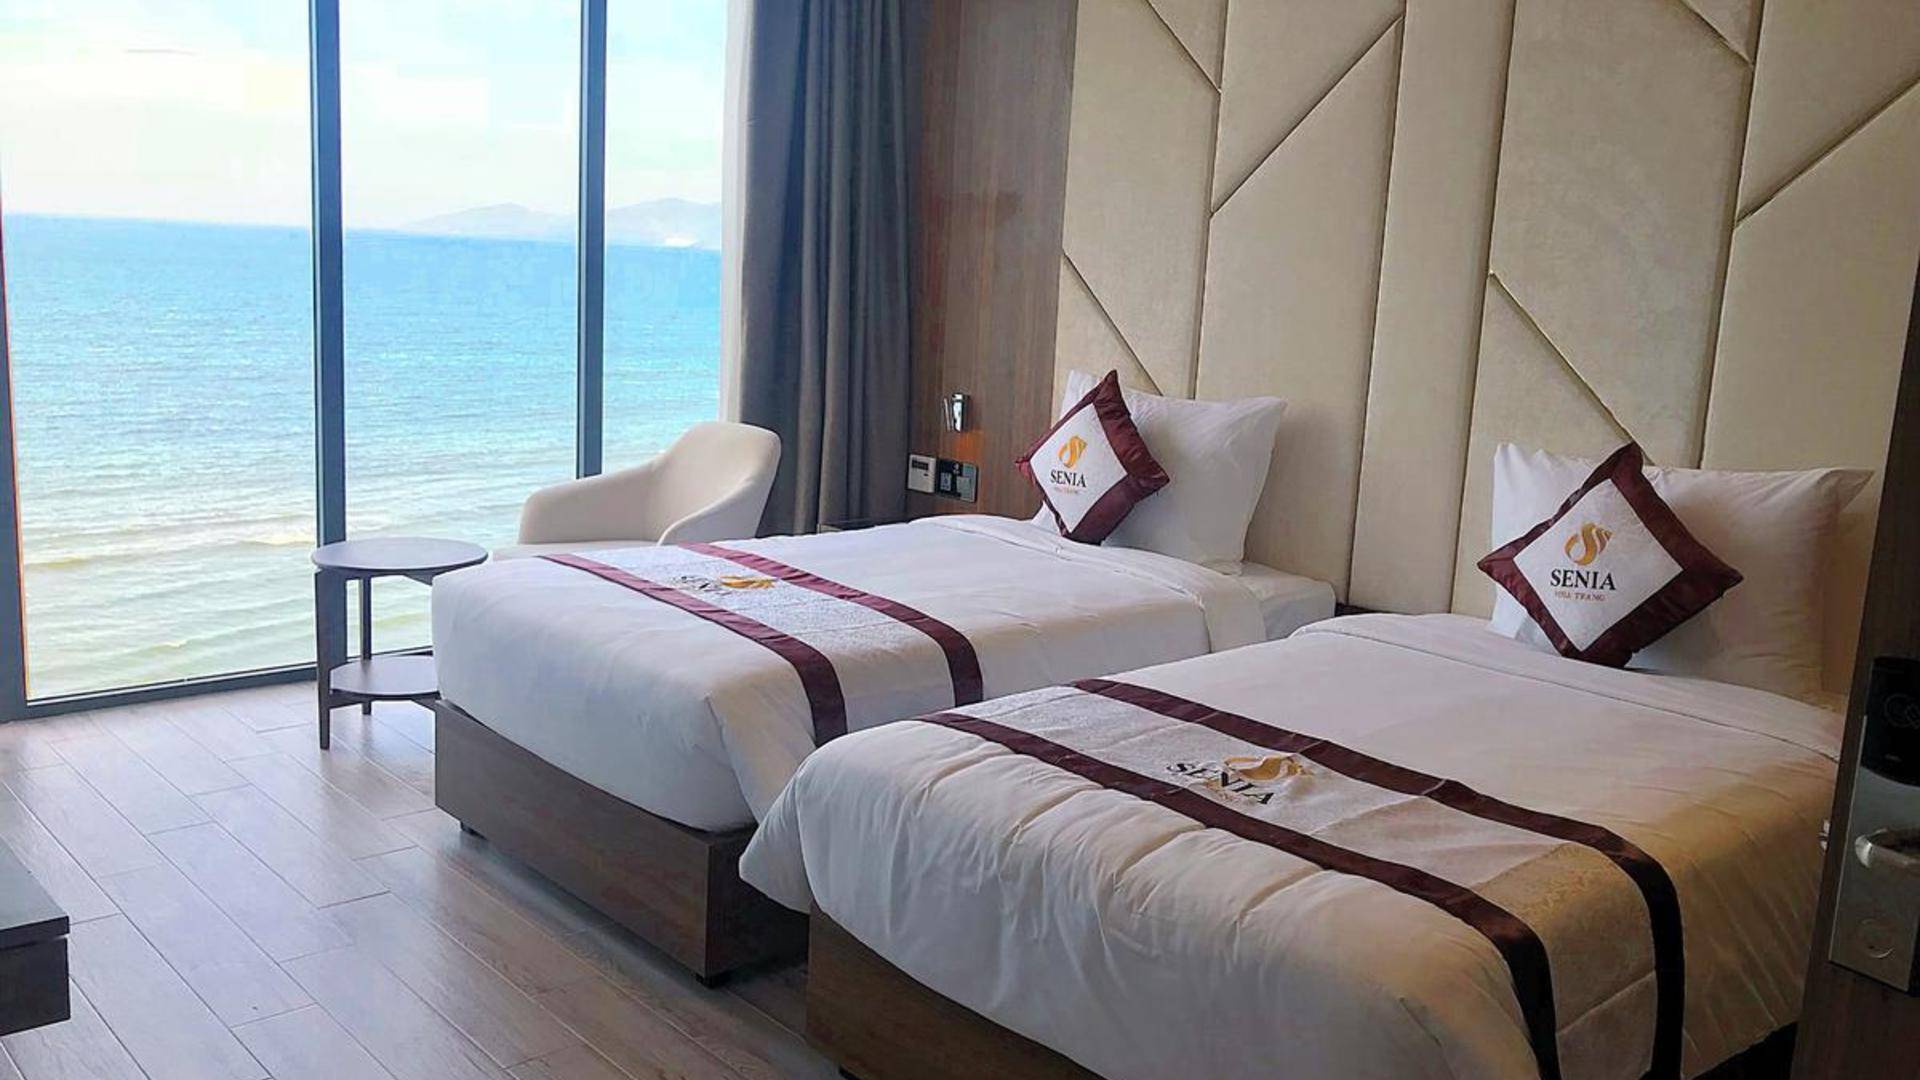 Memory nha trang hotel, нячанг, отель, вьетнам – цена, контакт, отзывы гостей